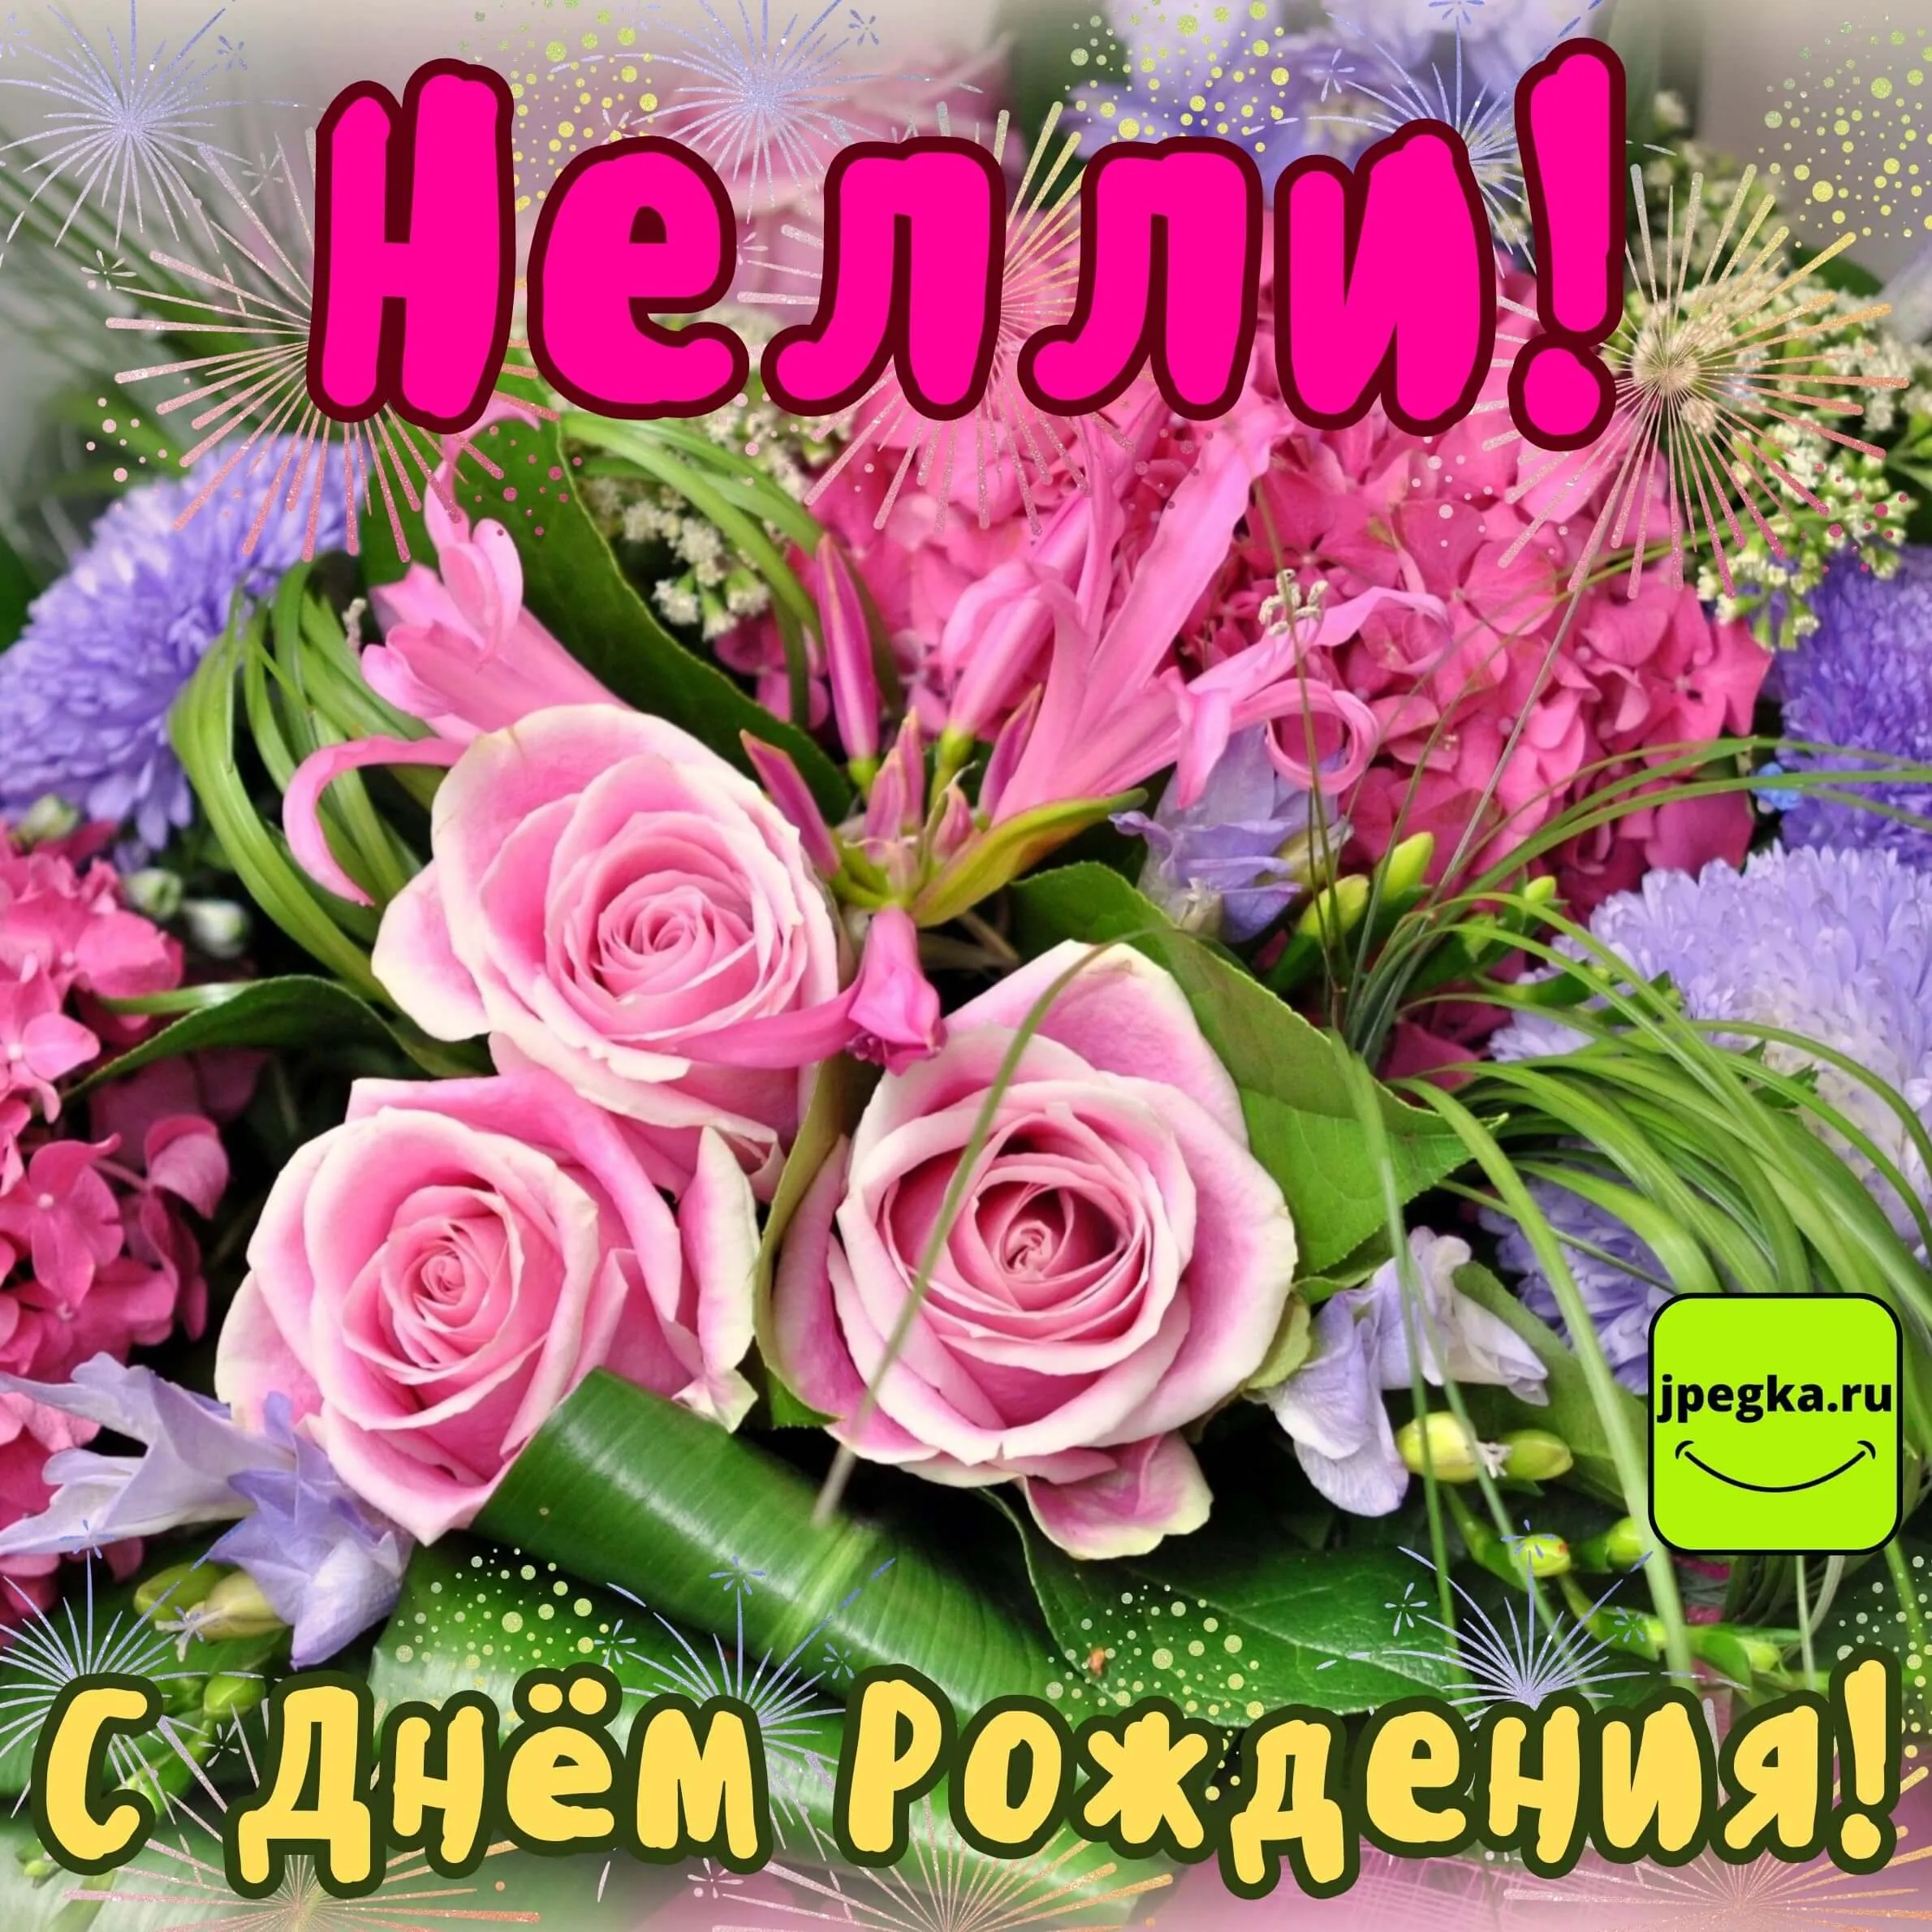 С Днем Рождения Нелли Солошенко ! ~ Открытка (плейкаст)